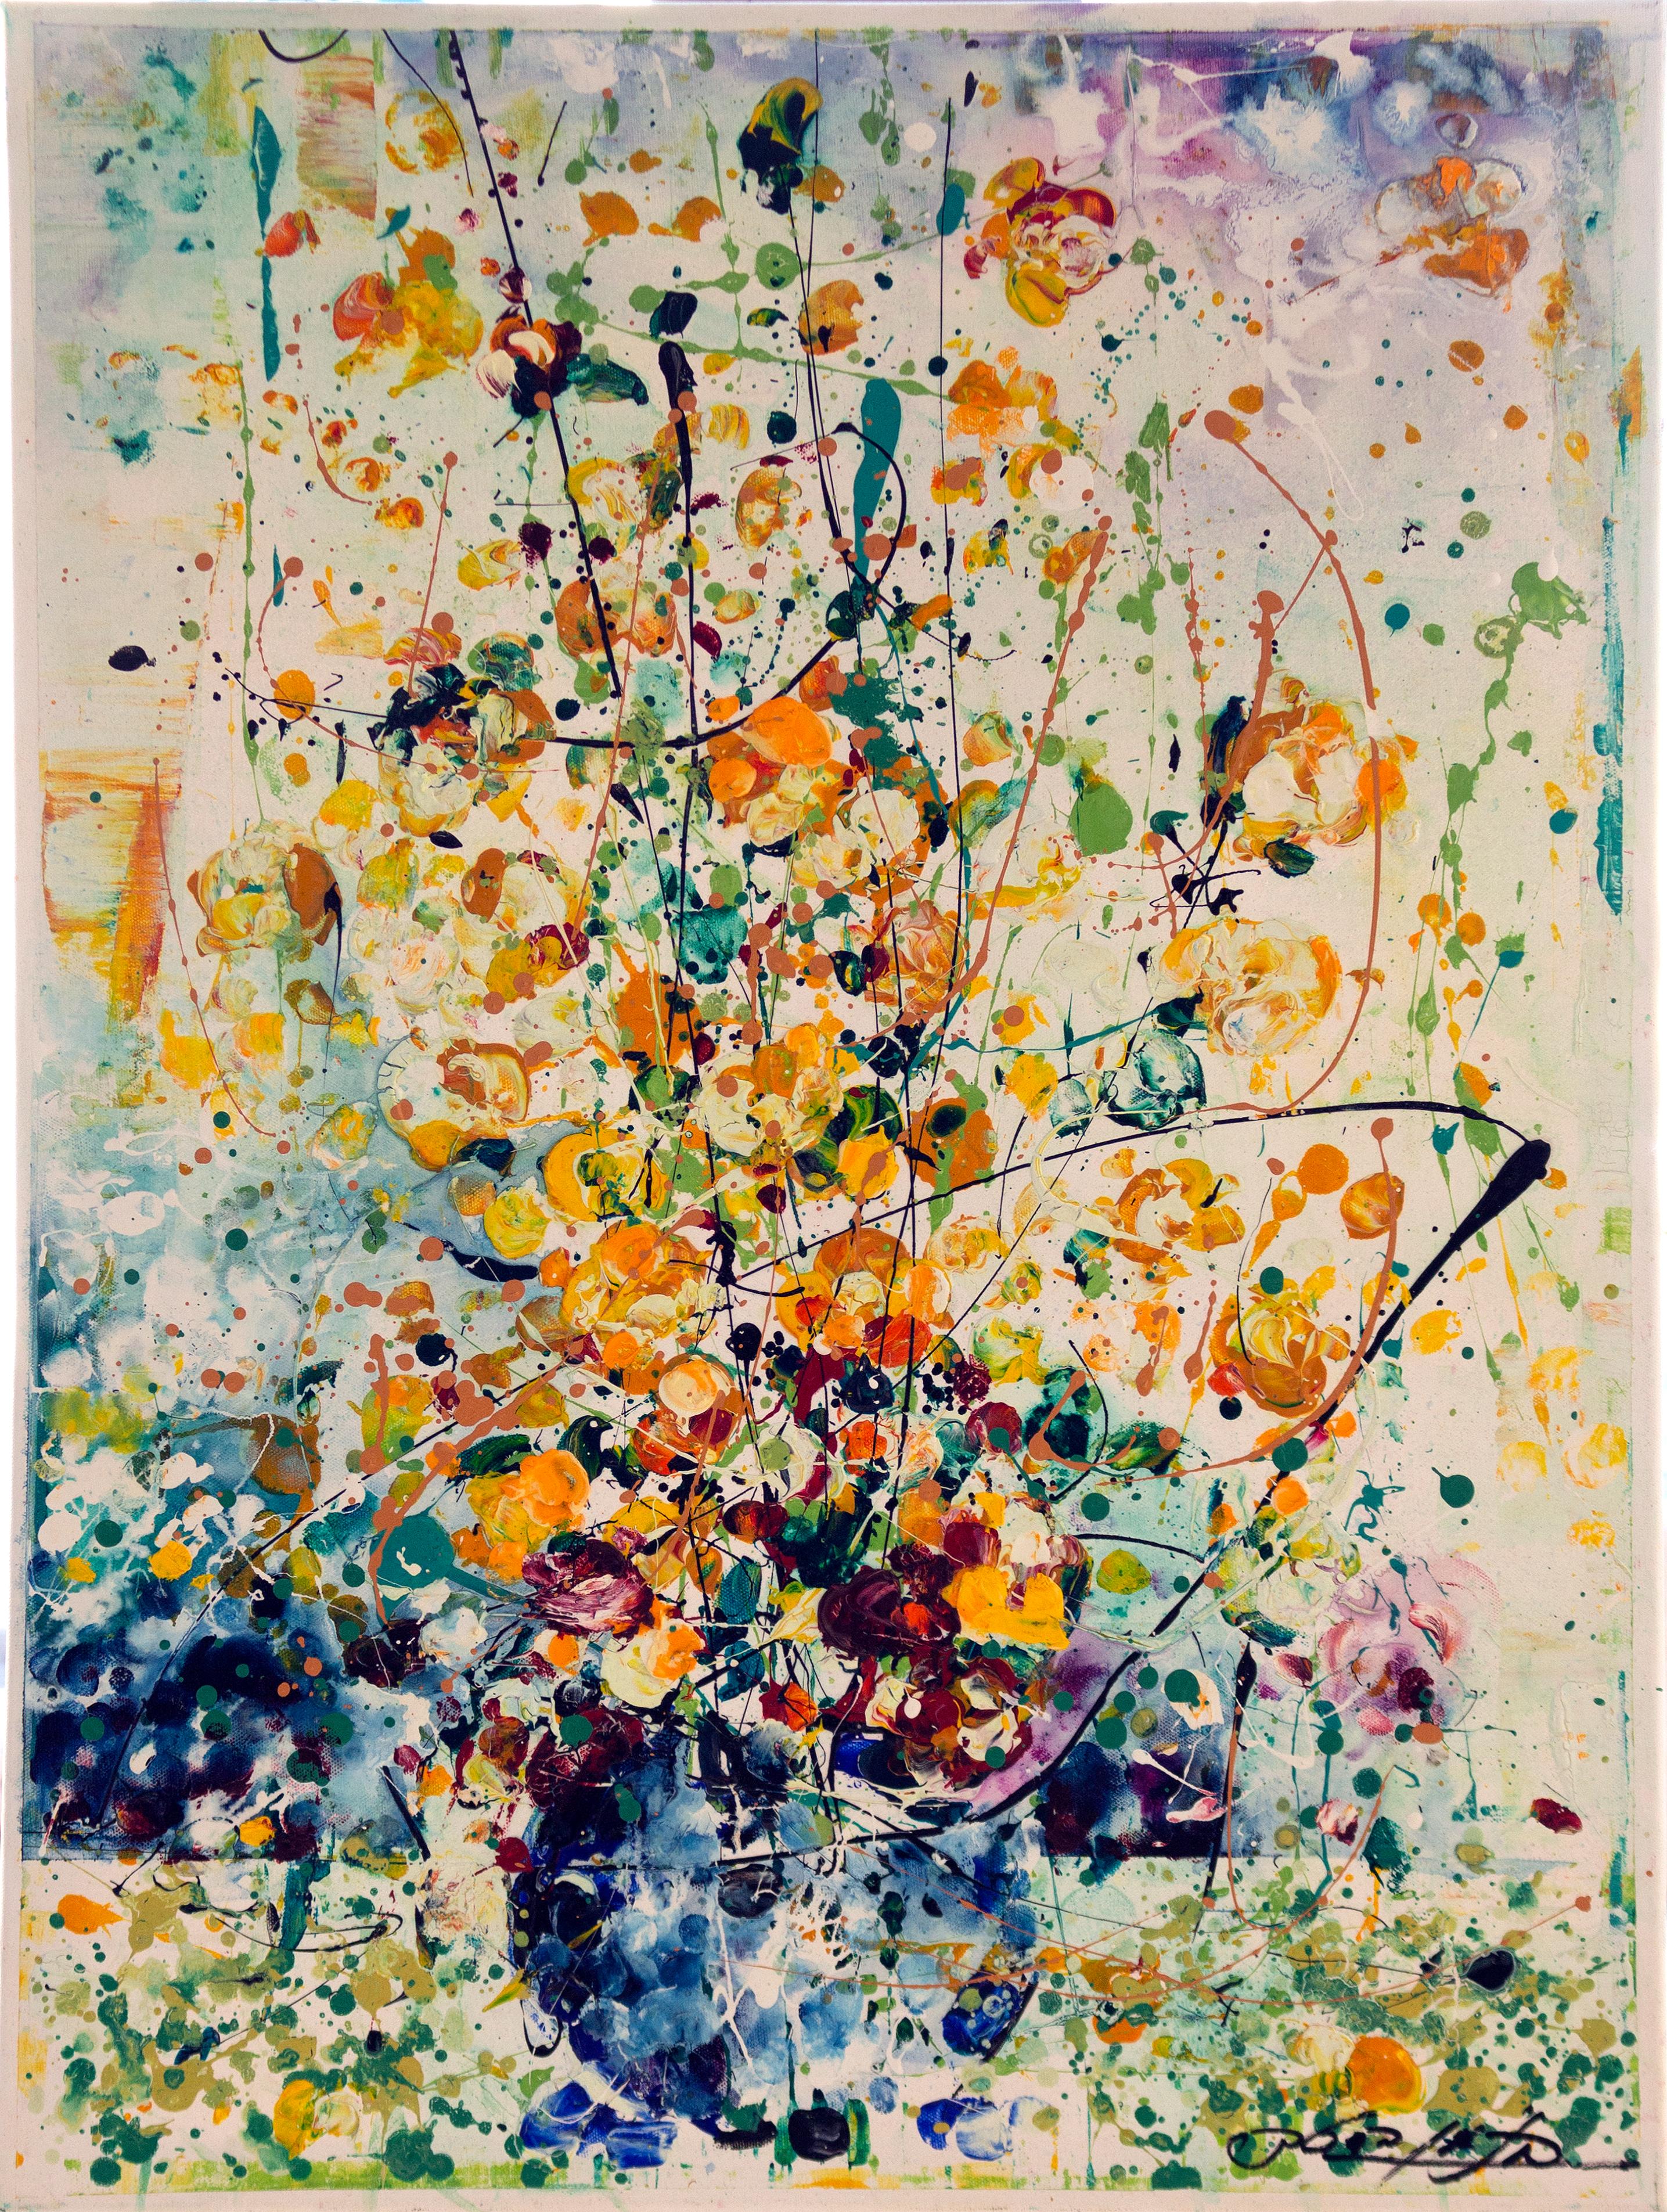 Binyamin Basteker
Die Klänge der Blumen , 2020
öl auf Leinwand  
80 x 60 cm
31 x 24 Zoll

Ausgestellt: "Jerusalem Flowers", 2020 Rosenbach Contemporary, Jerusalem

Binyamin Basteker wurde 1953 in Mumbai geboren. Da er in einer Künstlerfamilie